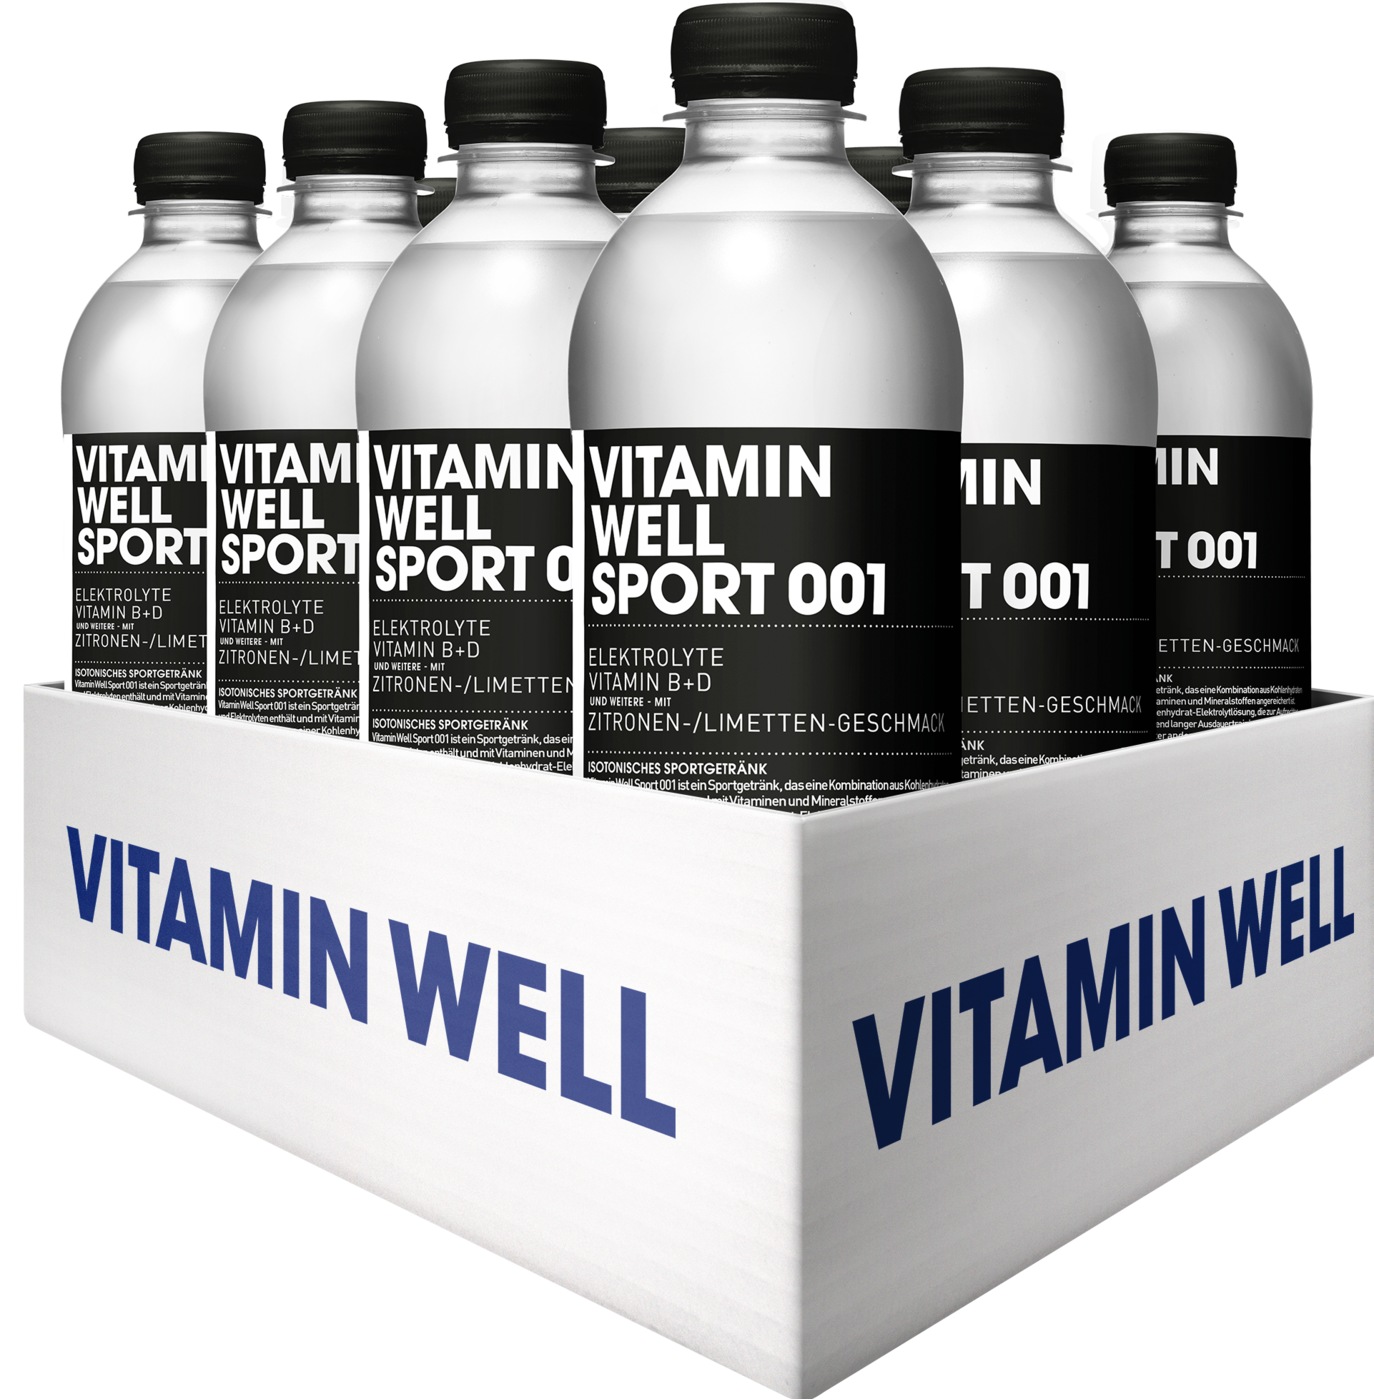 Vitamin Well Sport 001 (12 x 500ml)